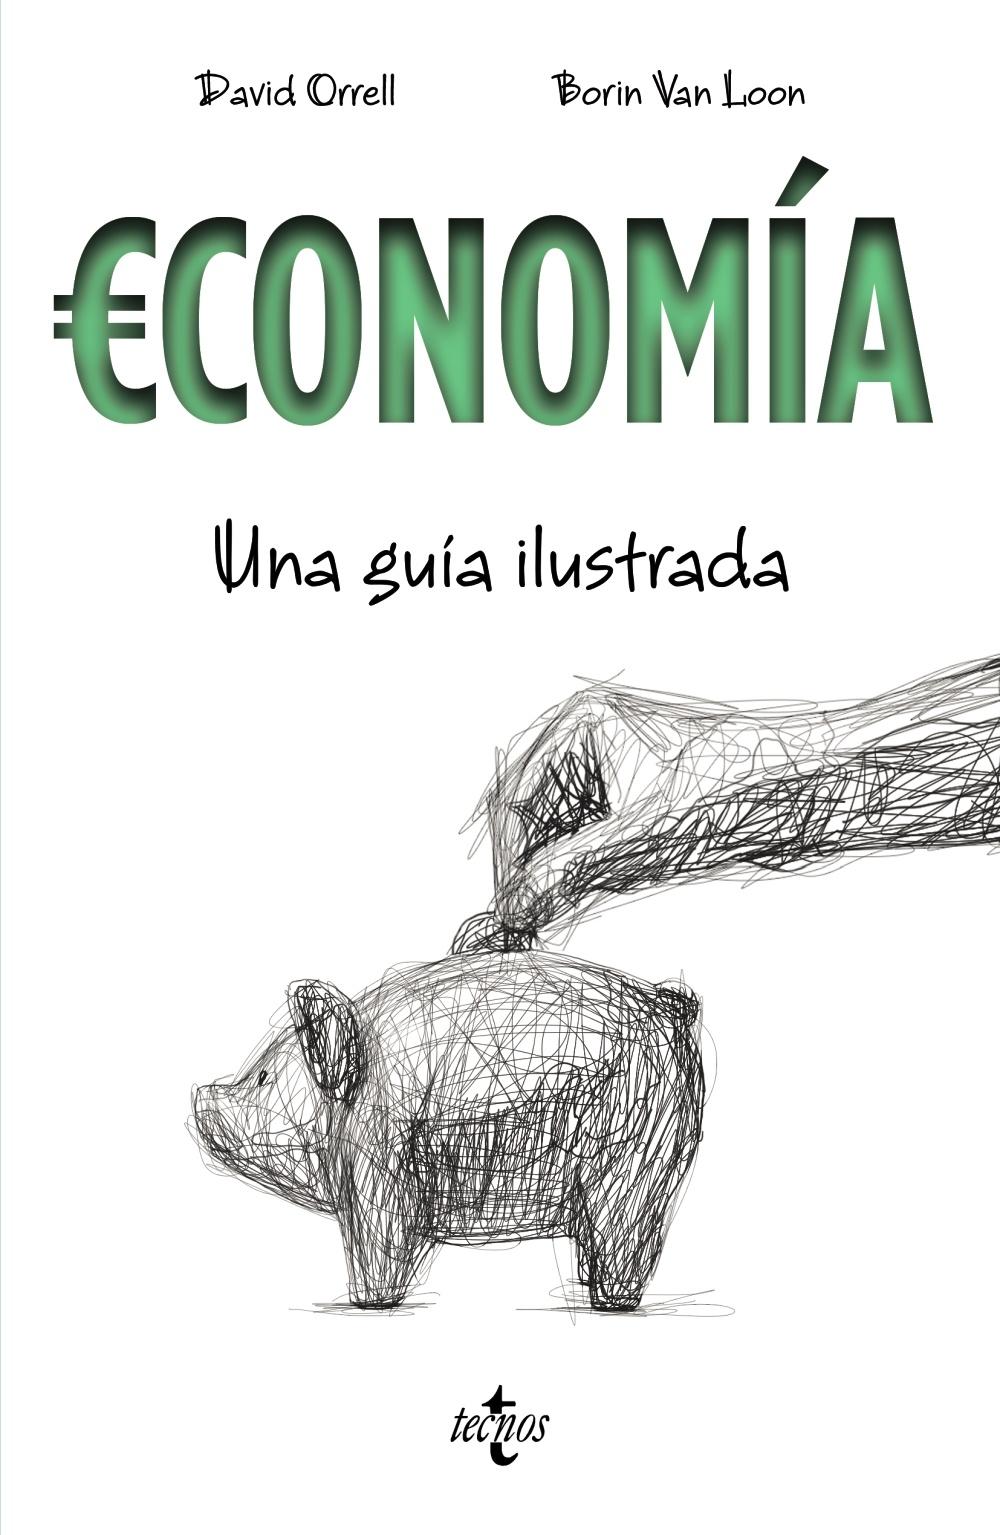 Economía "Una guía ilustrada"